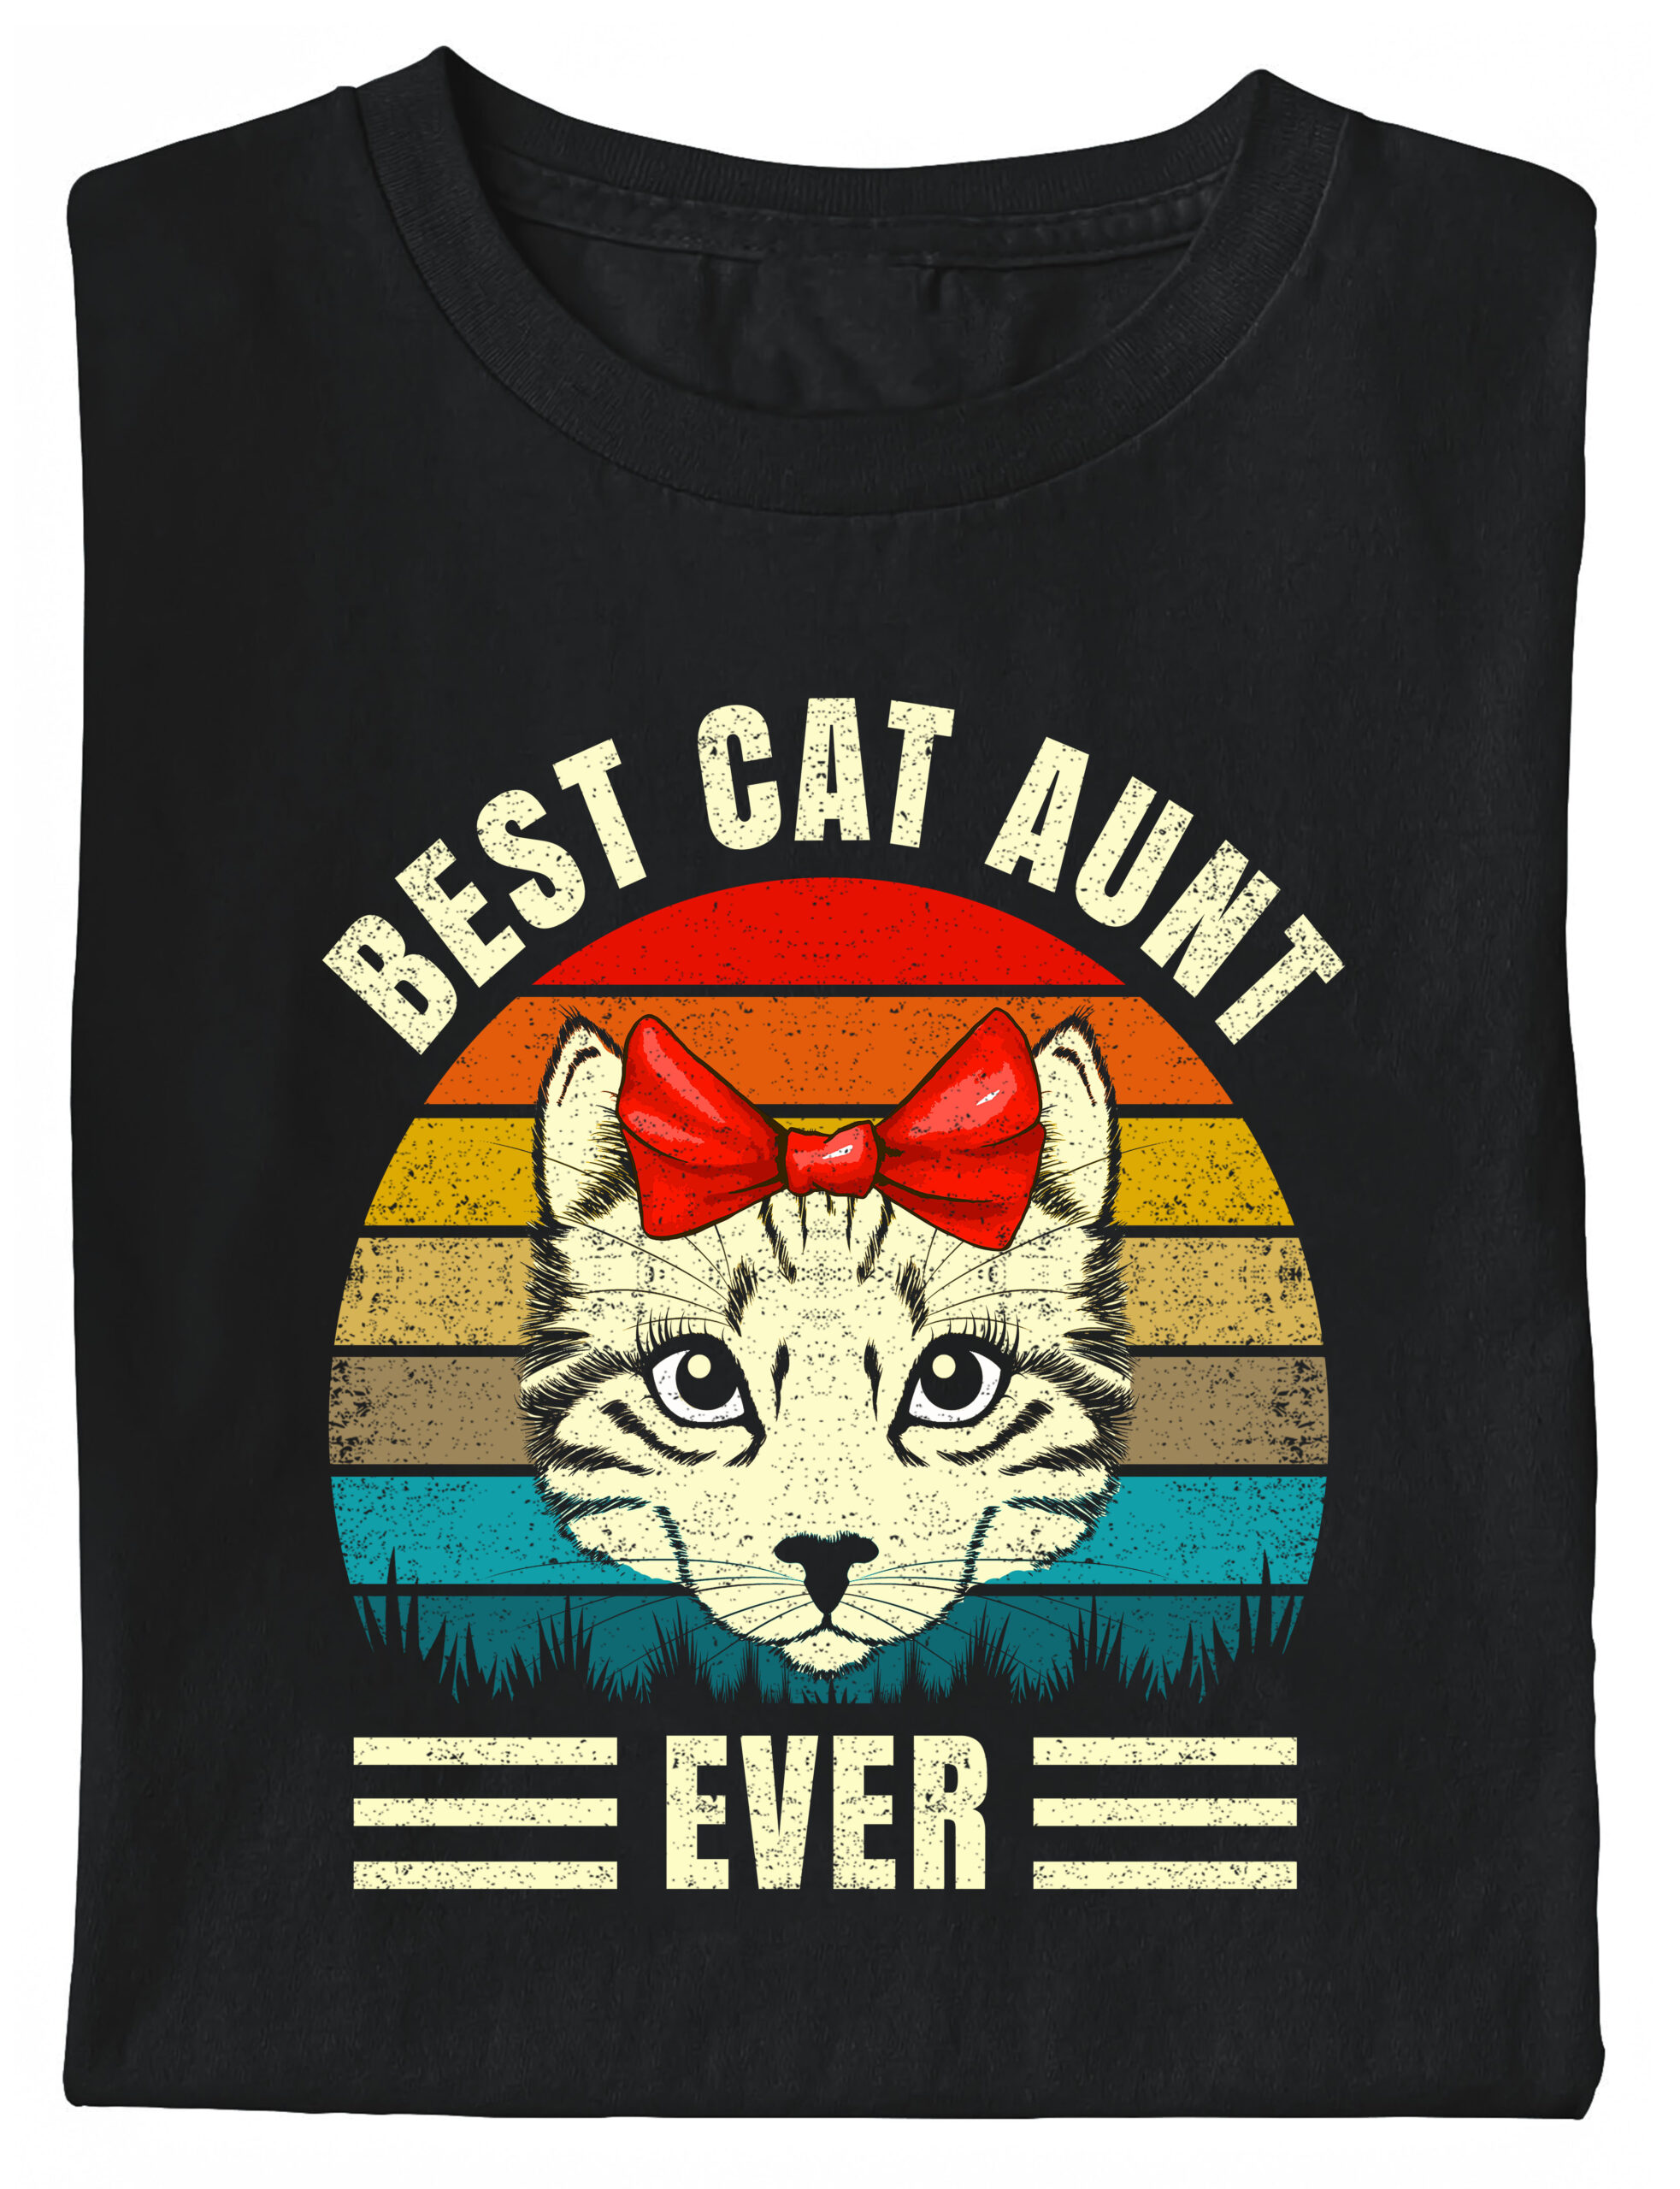 I love Cat Shirt Gift for Cat Owner - Gift for Cat Lover Love Shirt Pet lover Shirt Cat Shirt Birthday Gift- Cat Mom Tshirt for Her